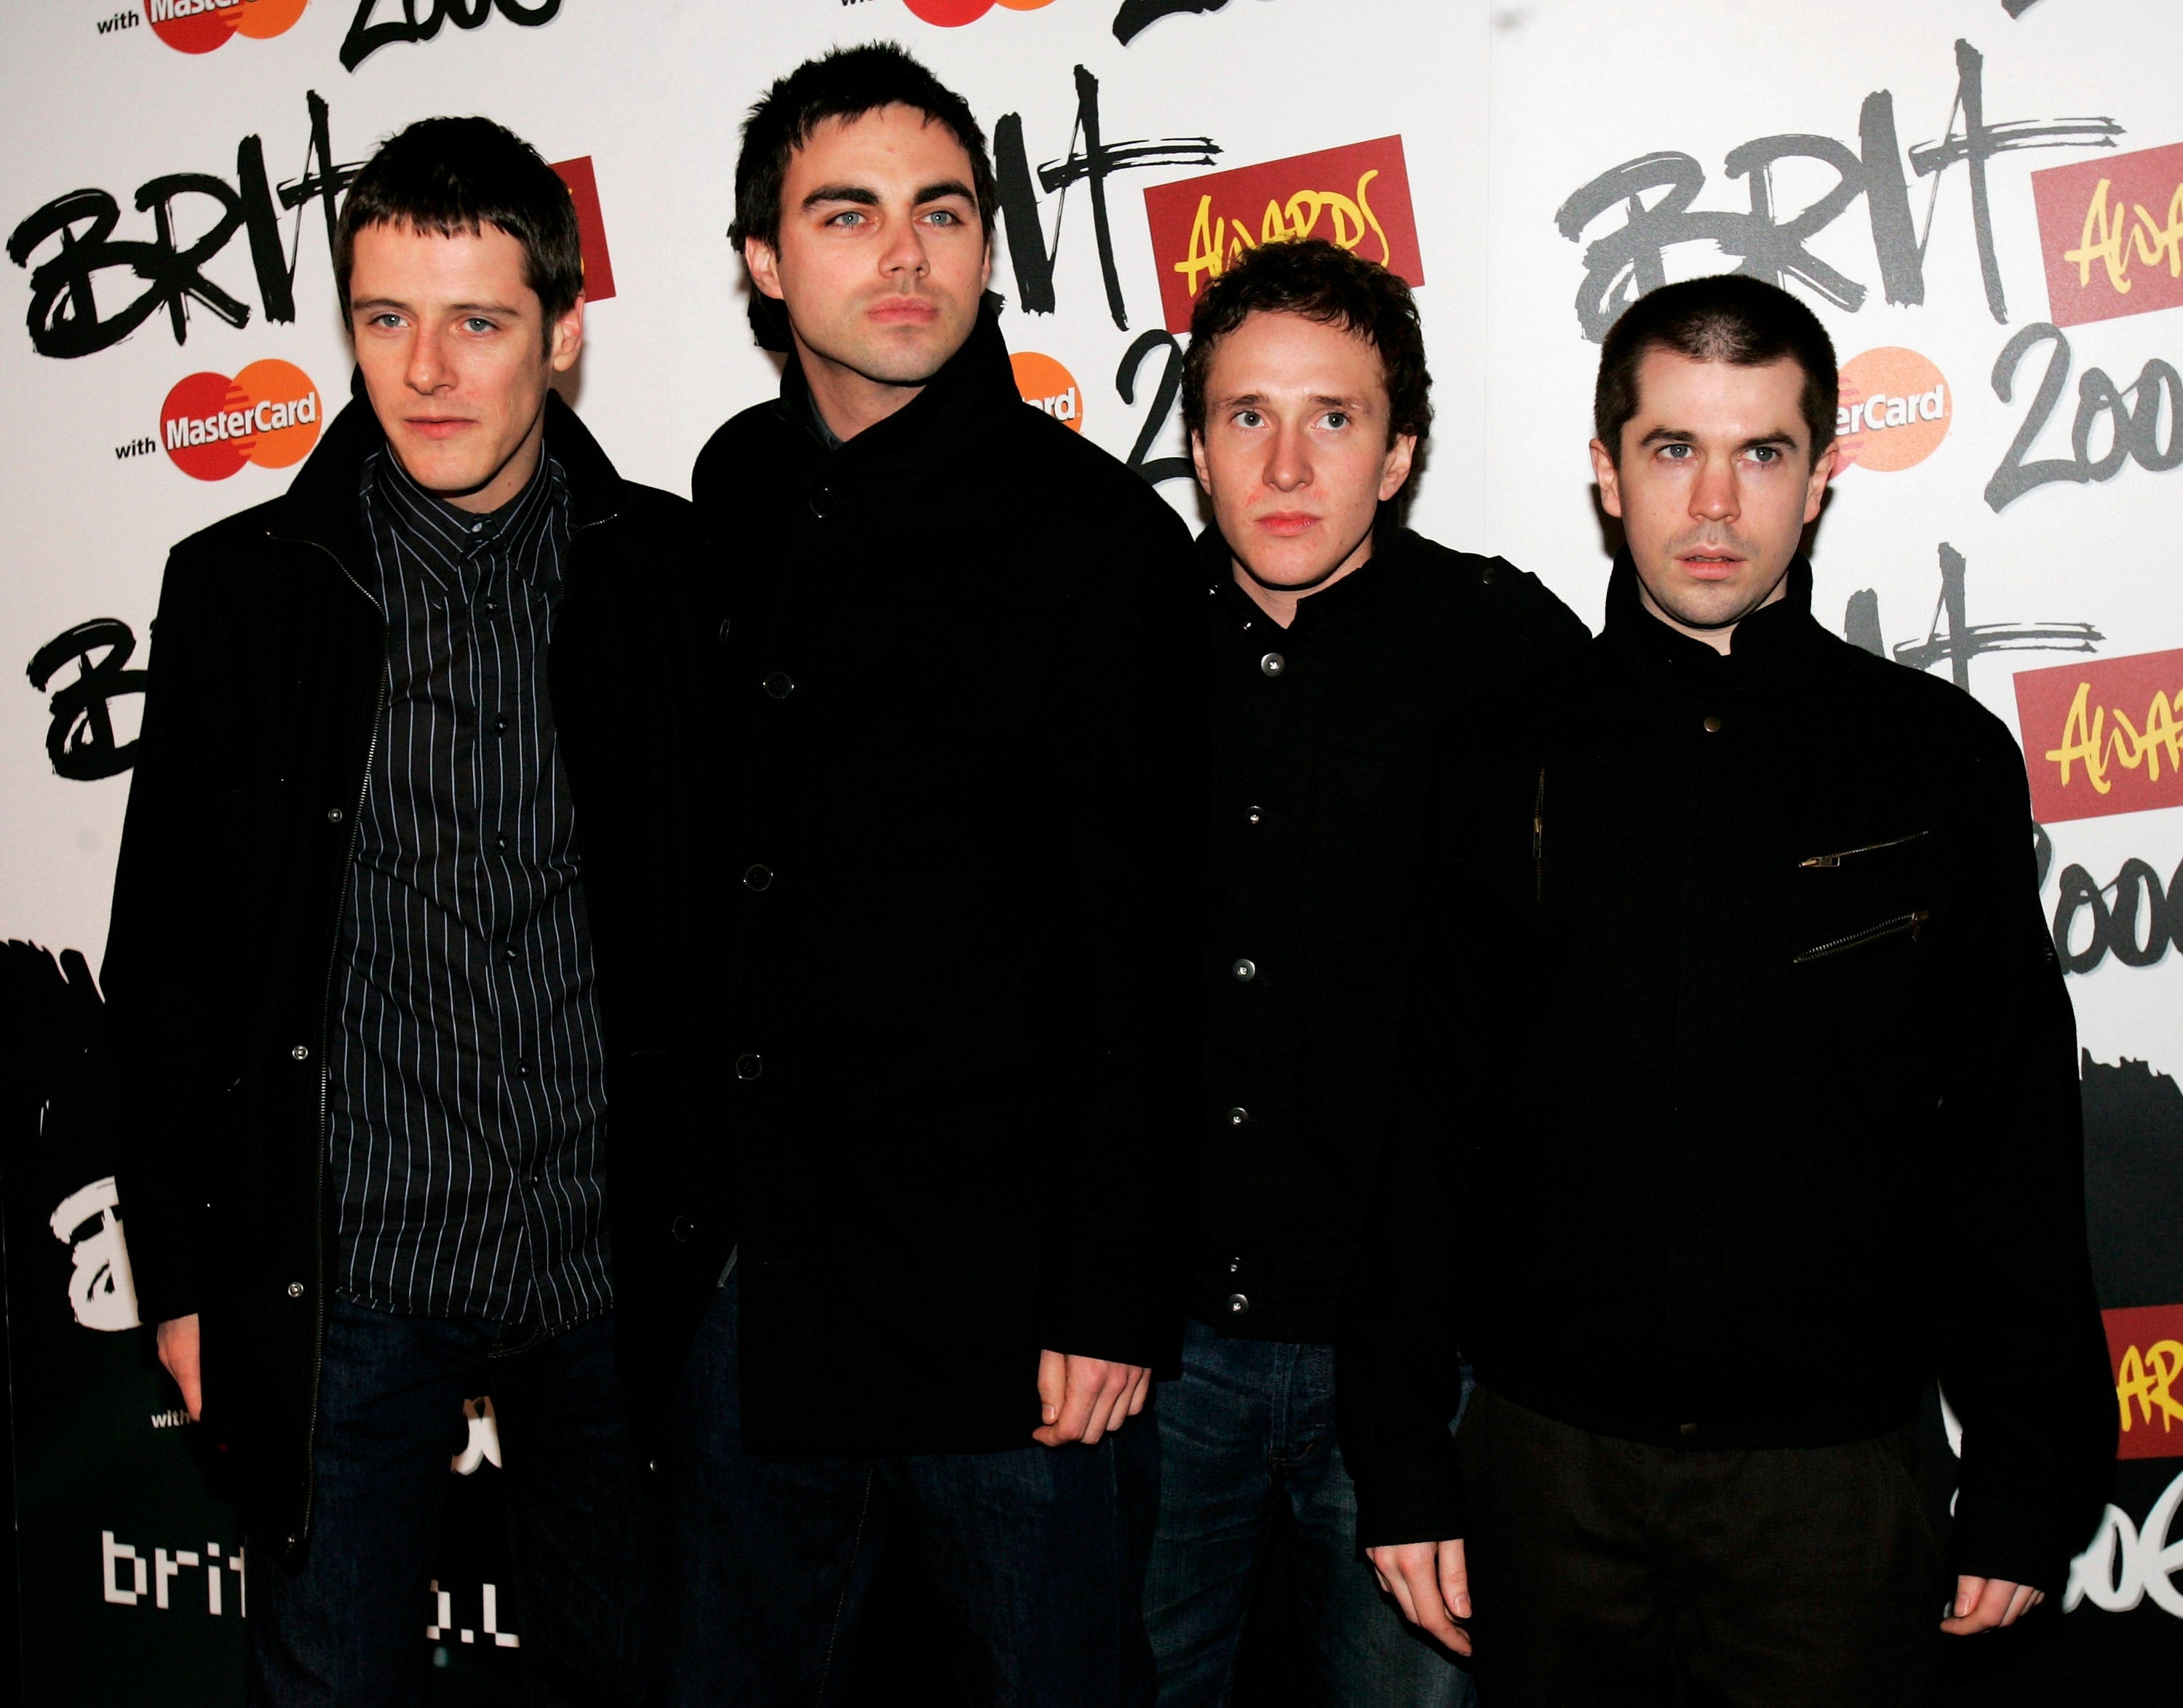 Hard-Fi at the Brit Awards in 2006